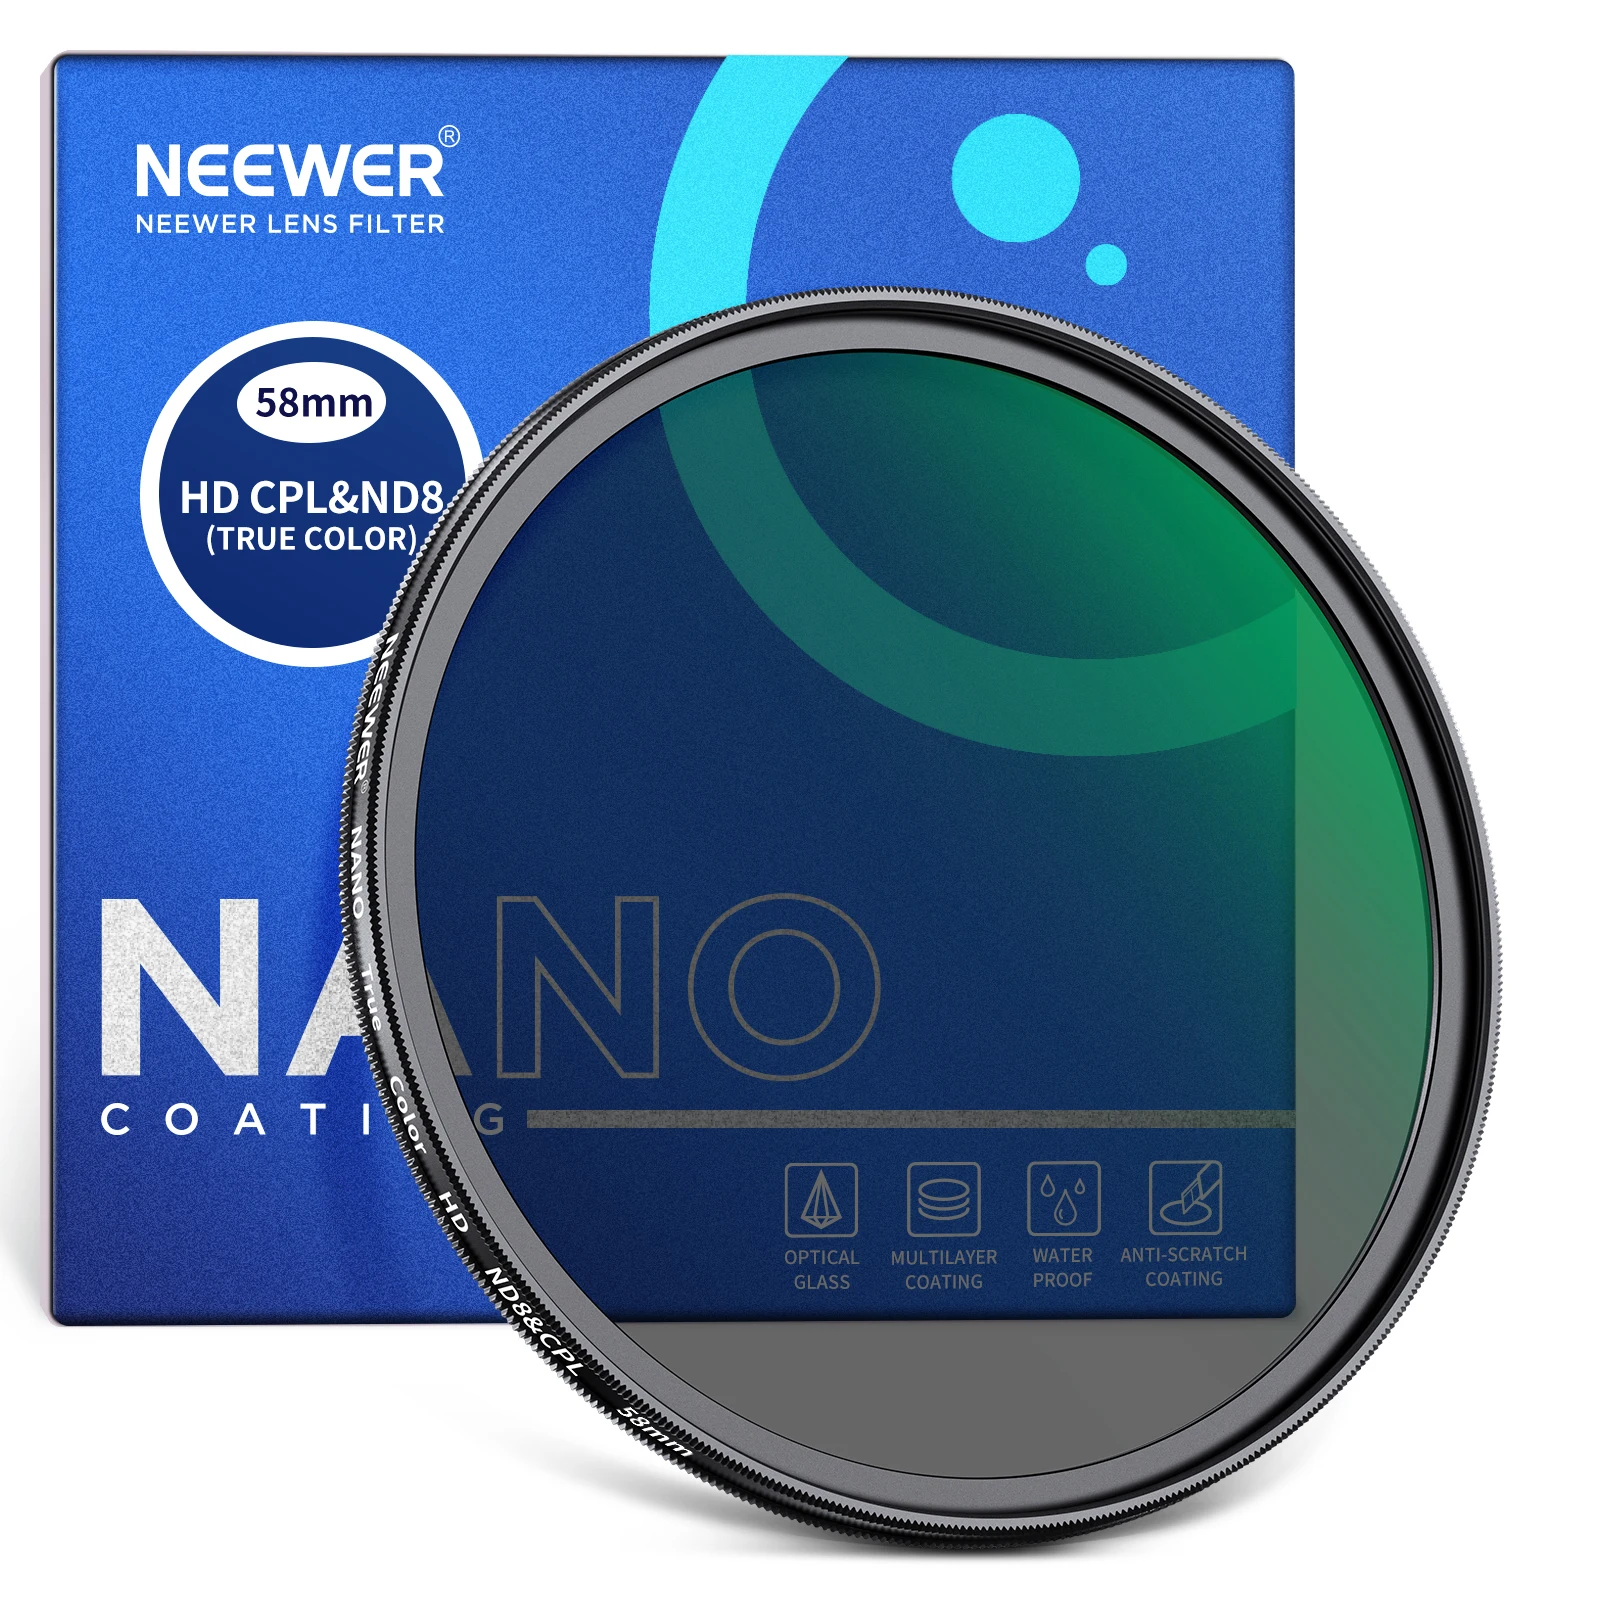 NEEWER True Color CPL с фильтром ND8 2 в 1, ND-фильтром с 3 остановками и круговым поляризационным фильтром в сочетании с многослойным нанопокрытием HD